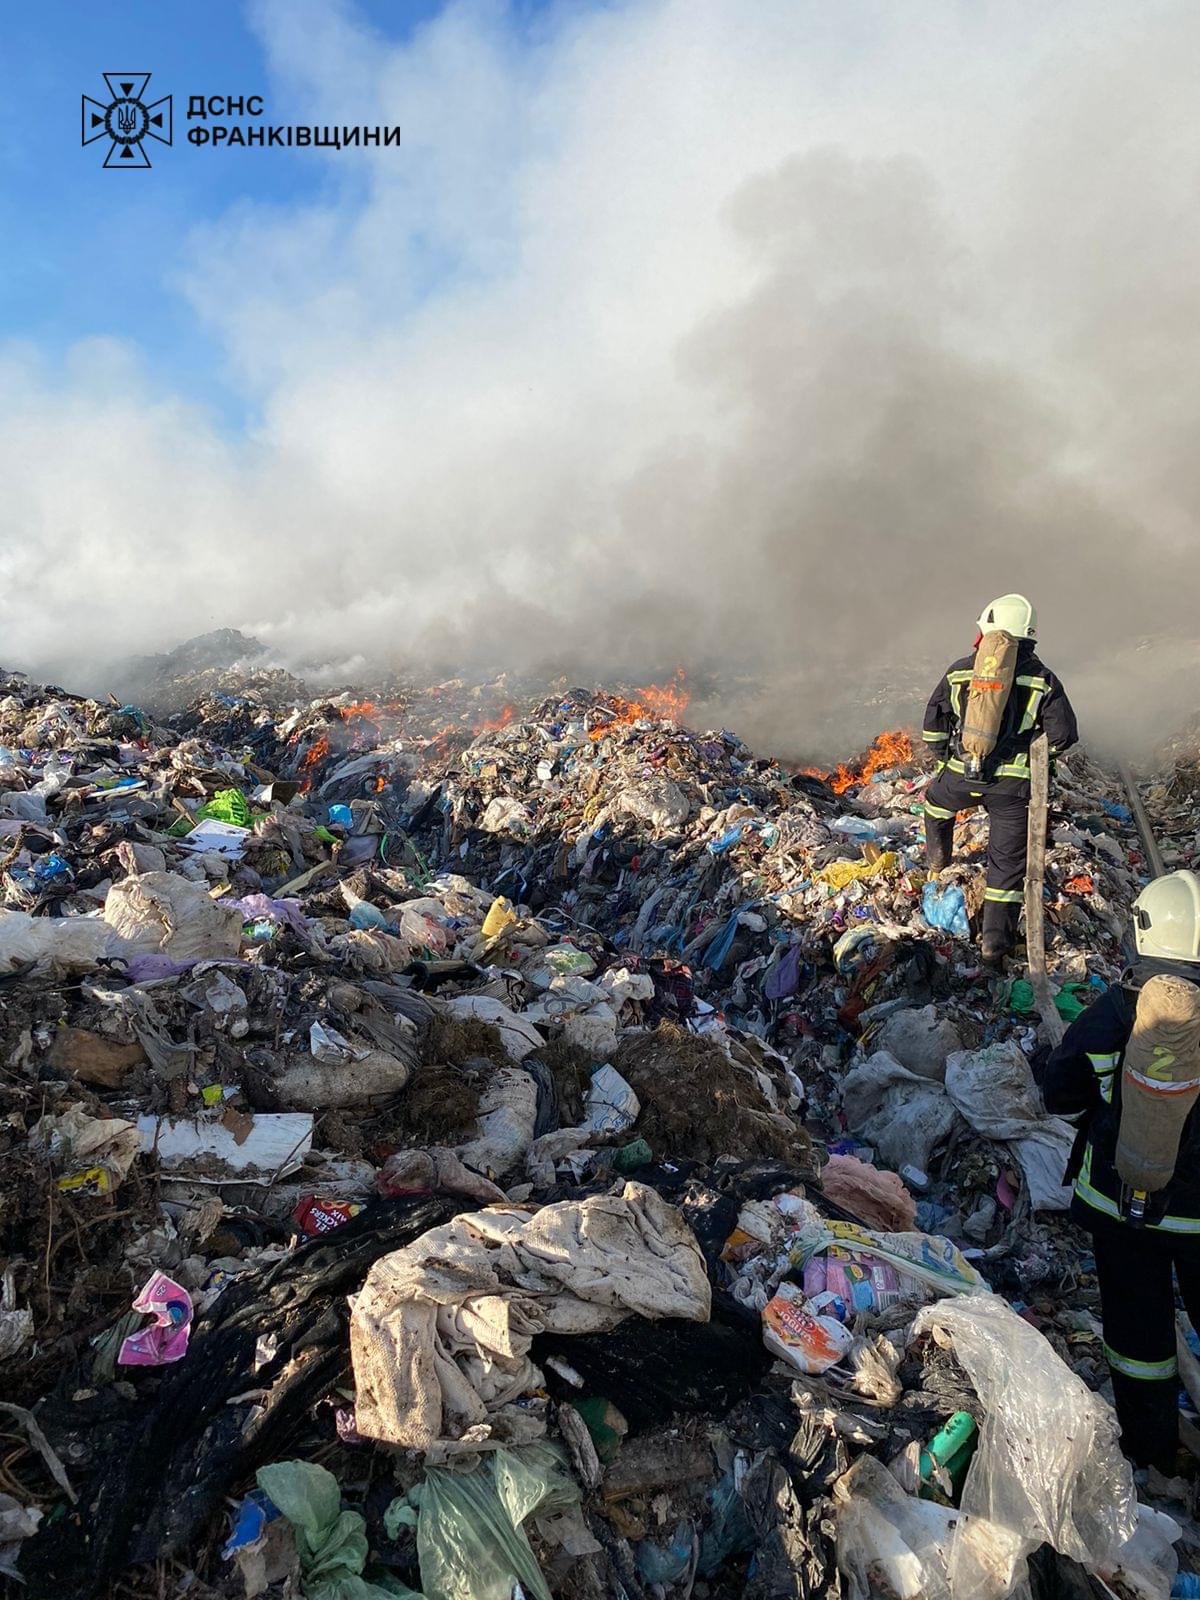 Біля Франківська горить міське сміттєзвалище (ФОТО)